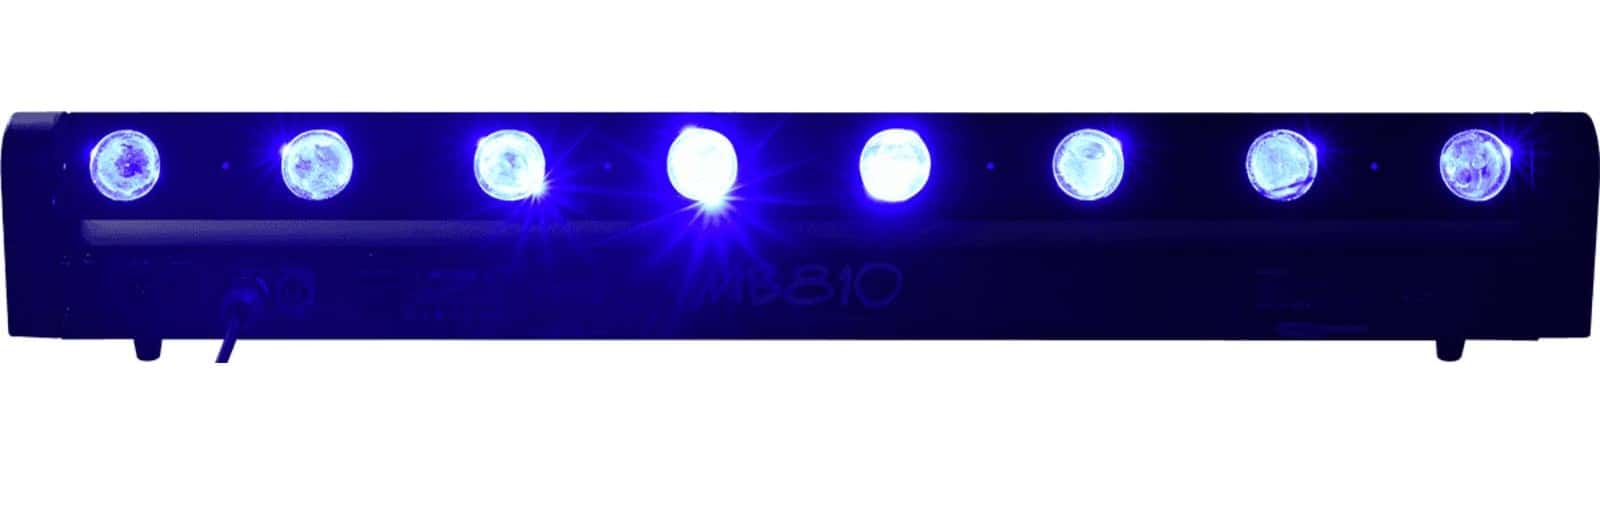 ALGAM LIGHTING MB 810 - 8 RGBW MOTORISIERTE LED-BAR